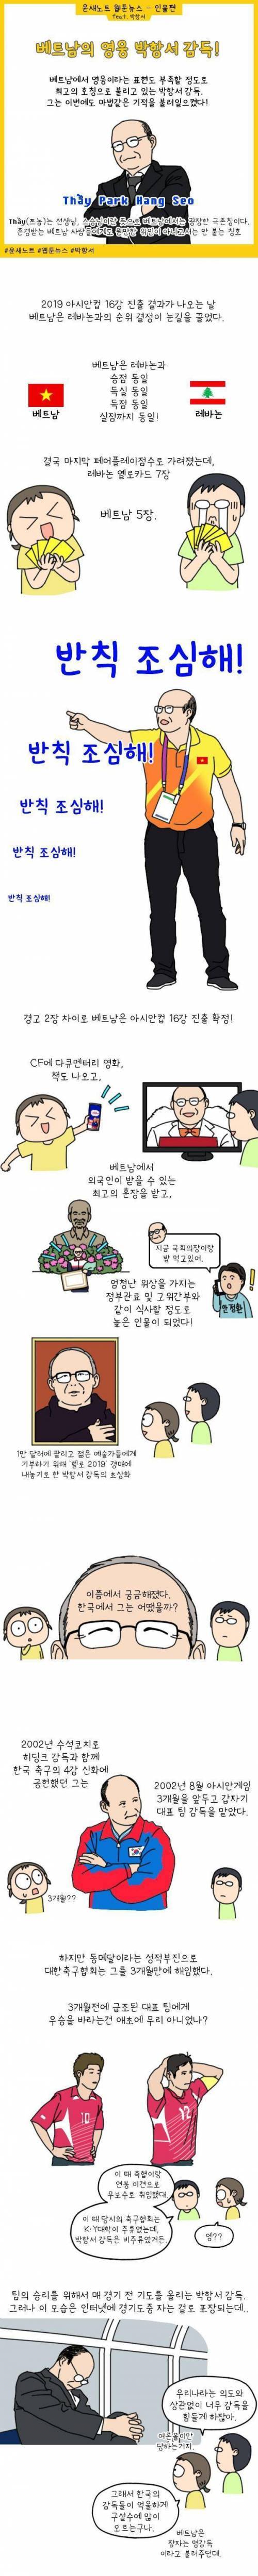 [스압] 한국을 알리는 베트남의 영웅 박항서 감독님.jpg